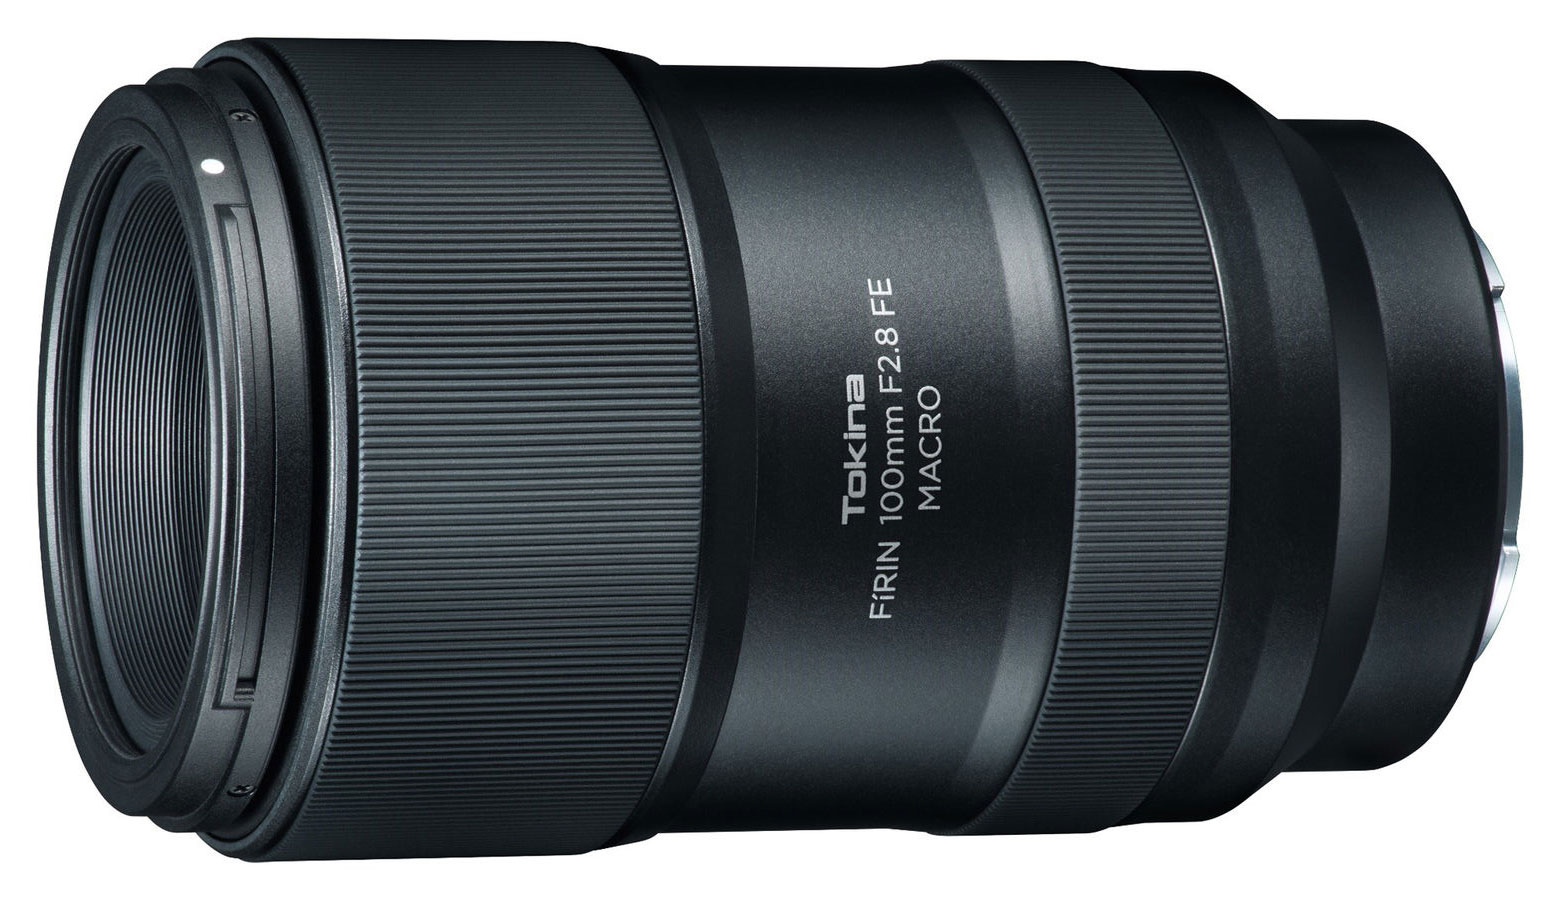 Tokina FiRIN 100mm f/2.8 FE Macro Lens for Sony E-Mount